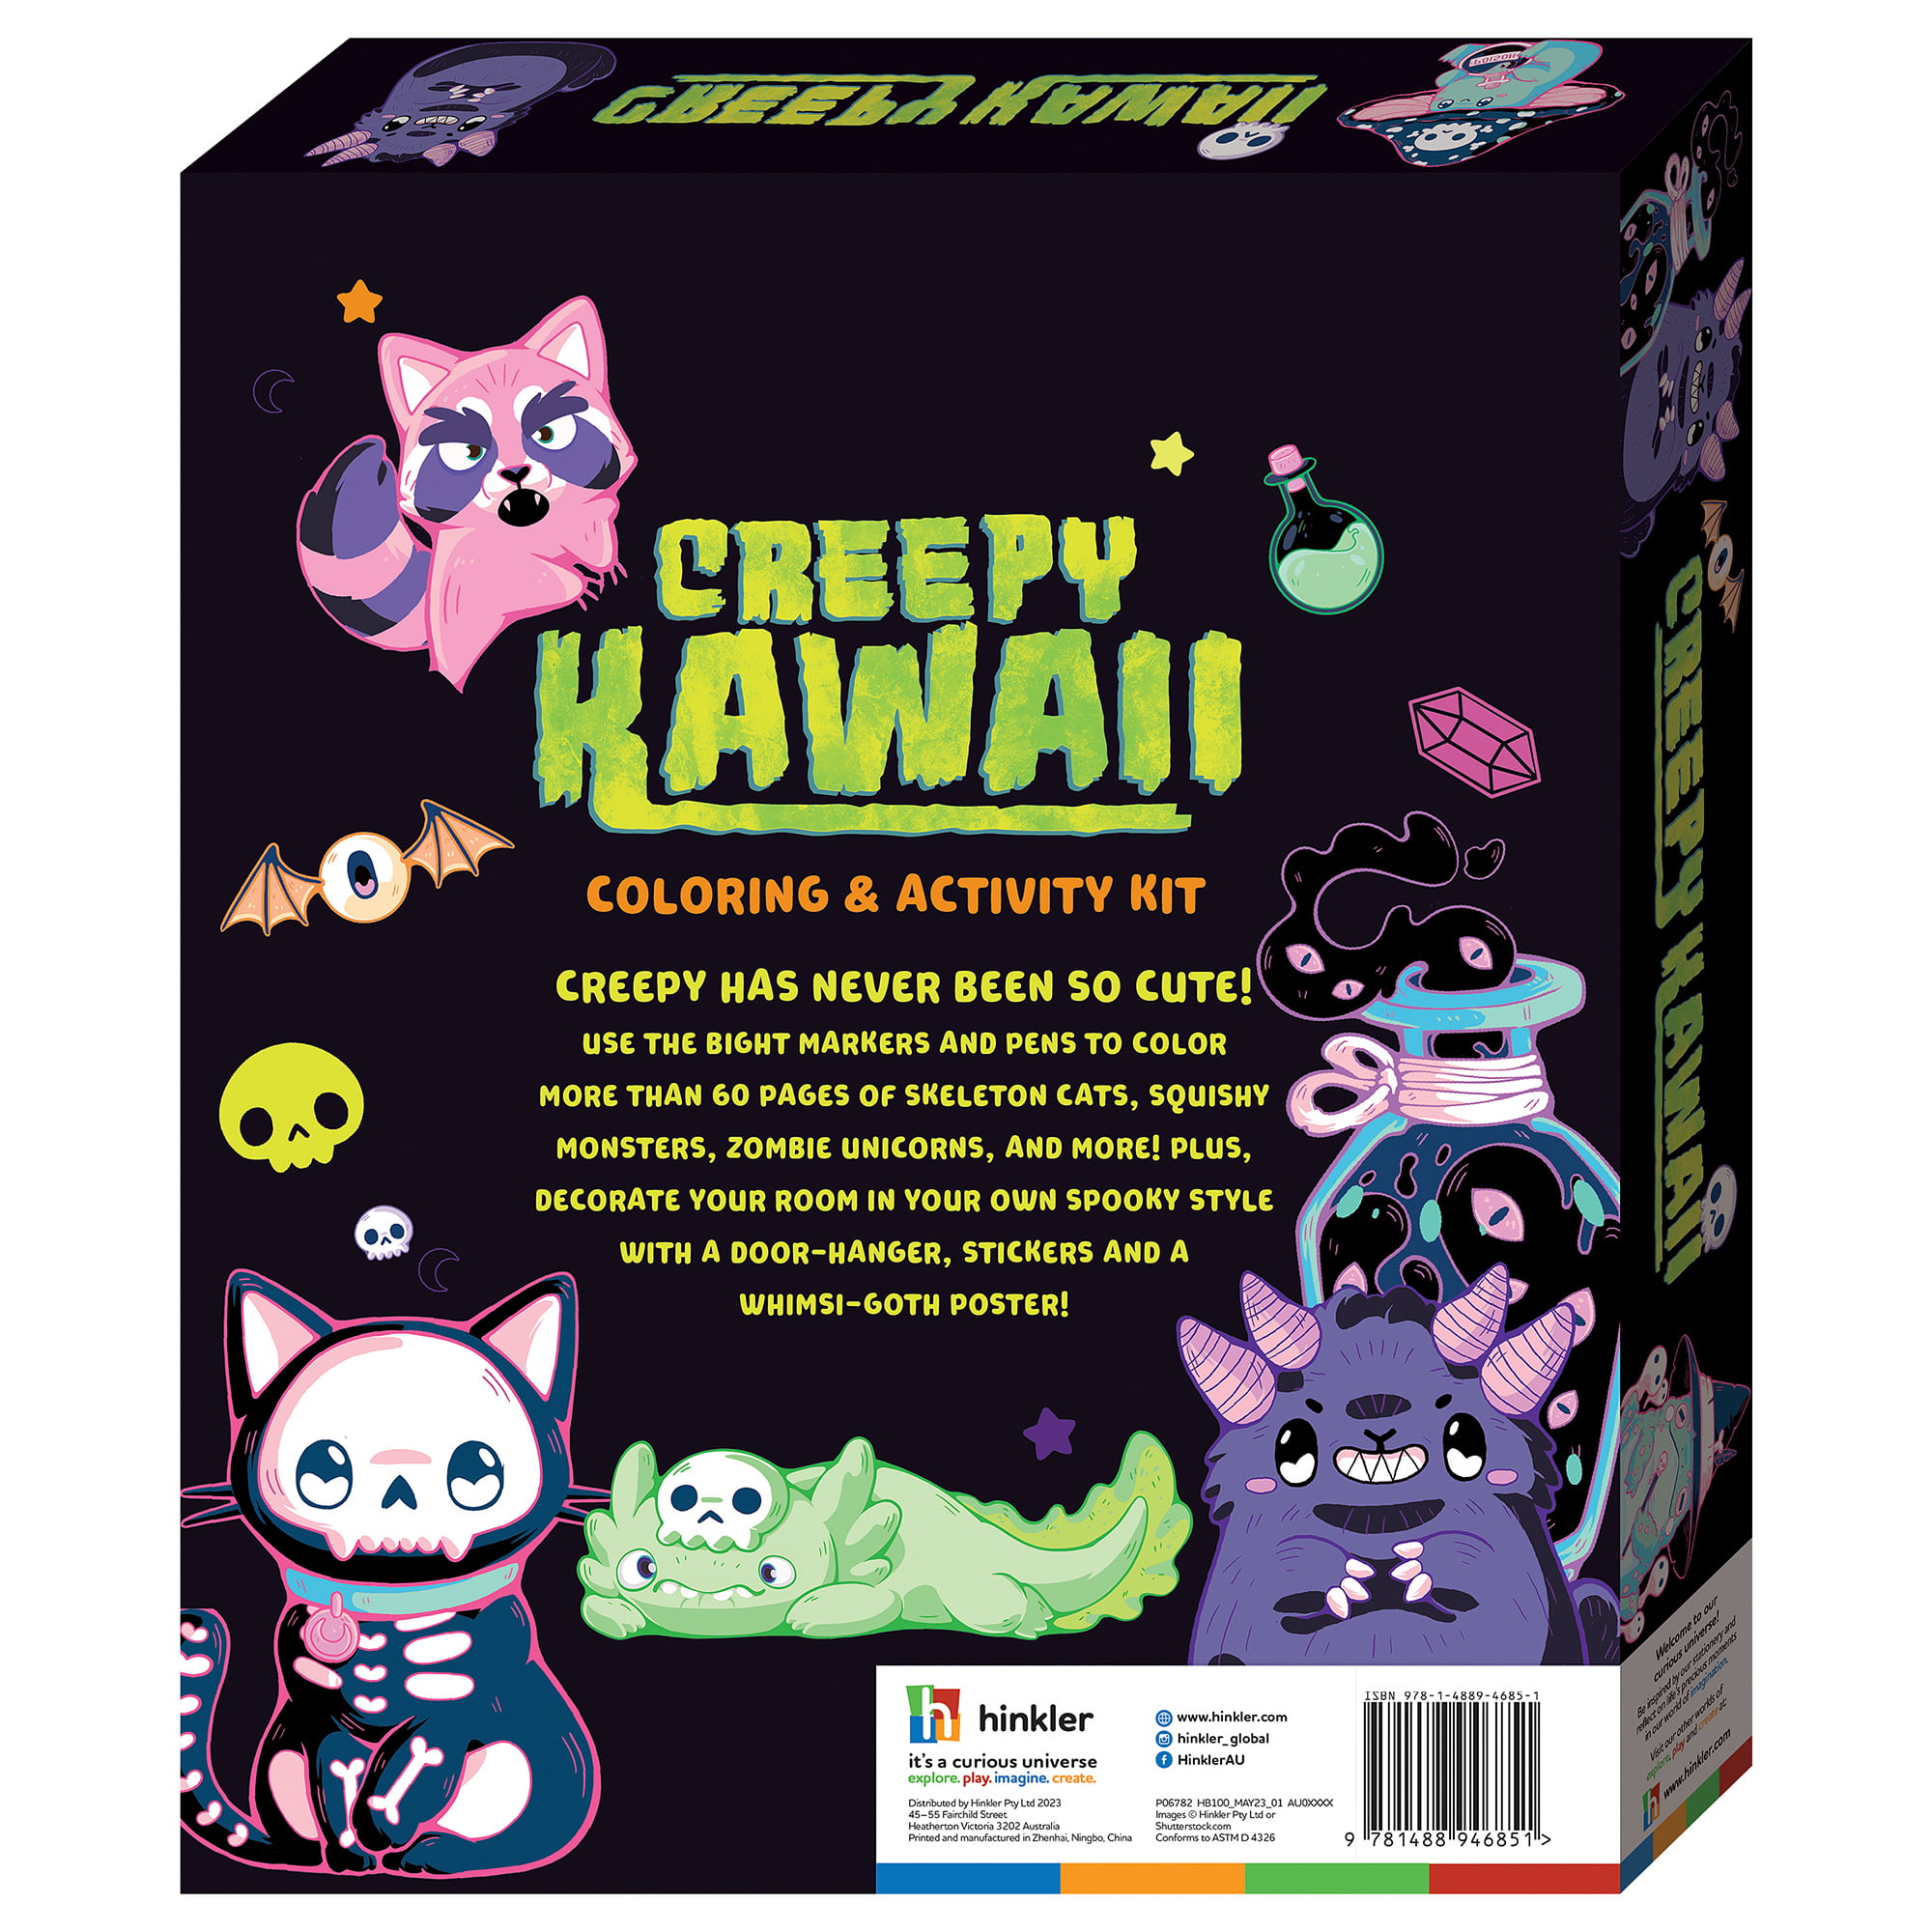 Kaleidoscope Kawaii Snackables Coloring Book Kit